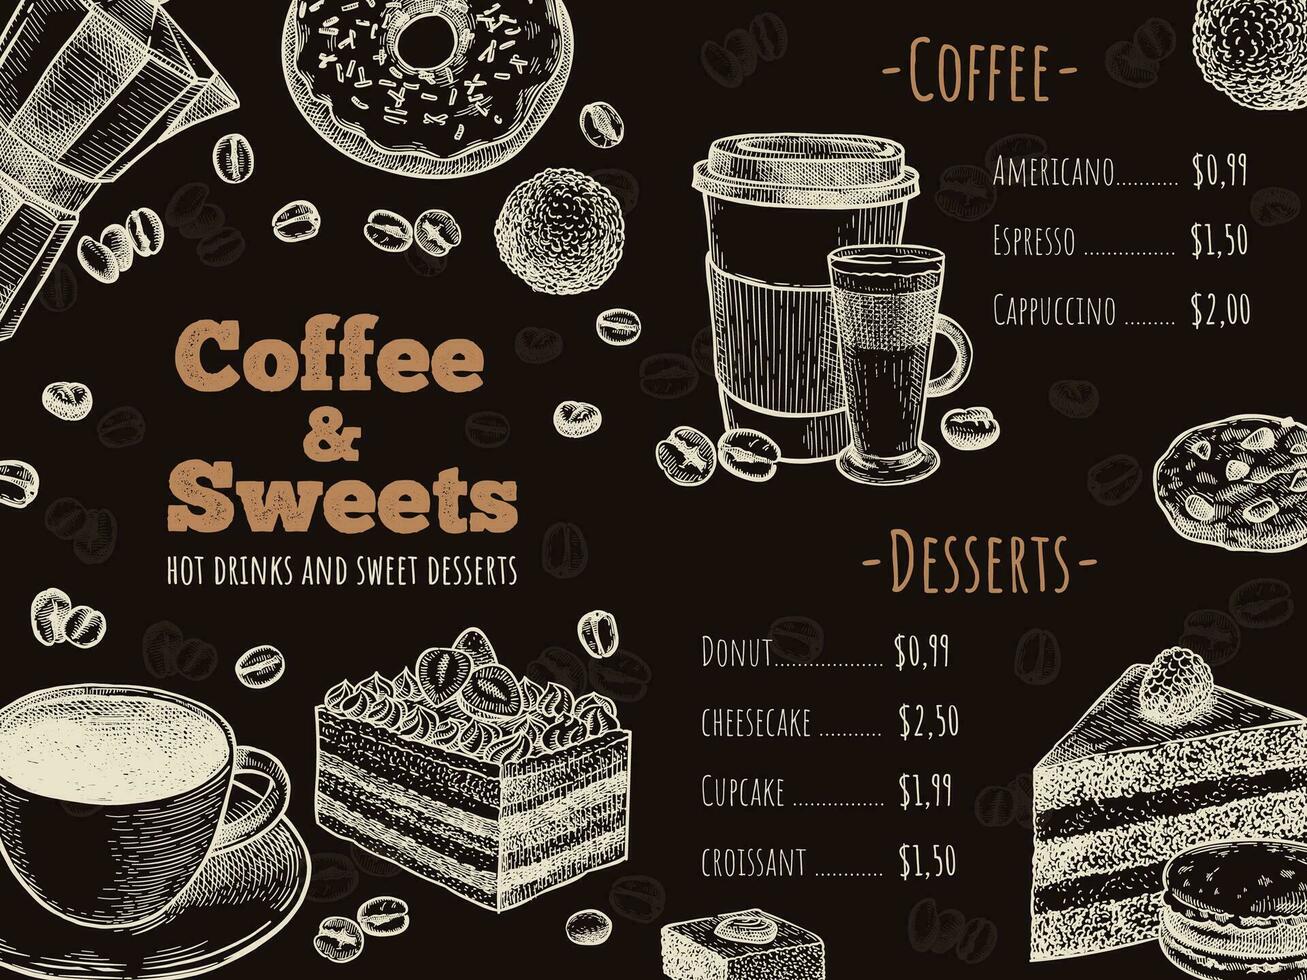 Kaffee Speisekarte. Kaffee Haus, Bar oder Cafe Speisekarte Design Vorlage, heiß Getränke, Nachspeisen und Kuchen, skizzieren Werbung Flyer Vektor Illustration